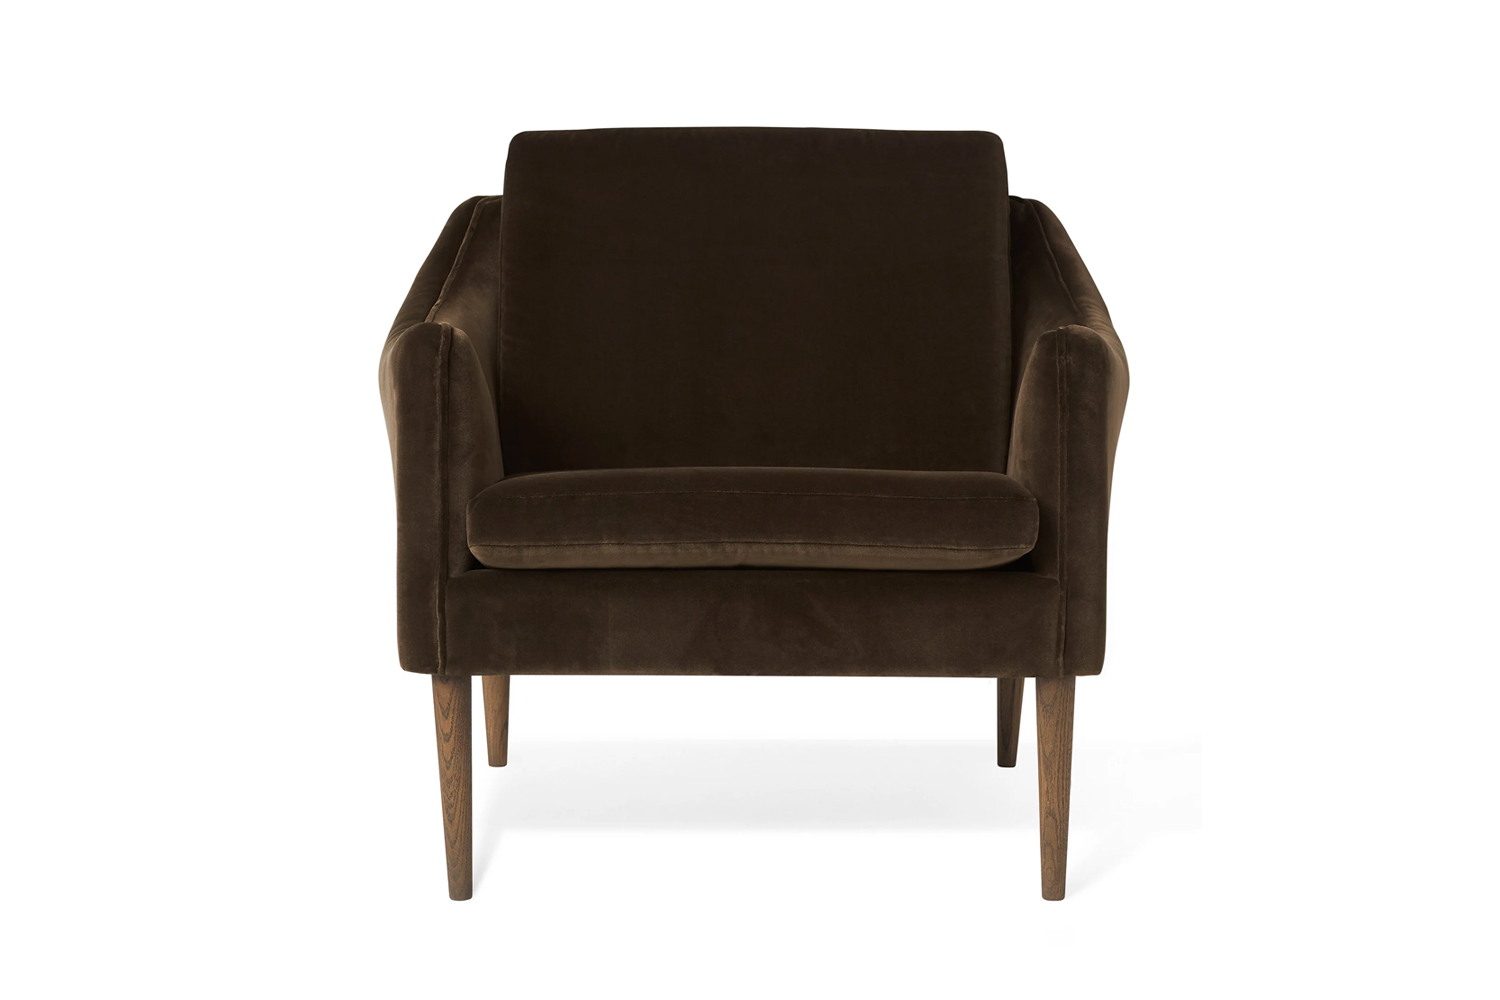 mr. olsen lounge chair by hans olsen for warm nordic in java brown velvet 19